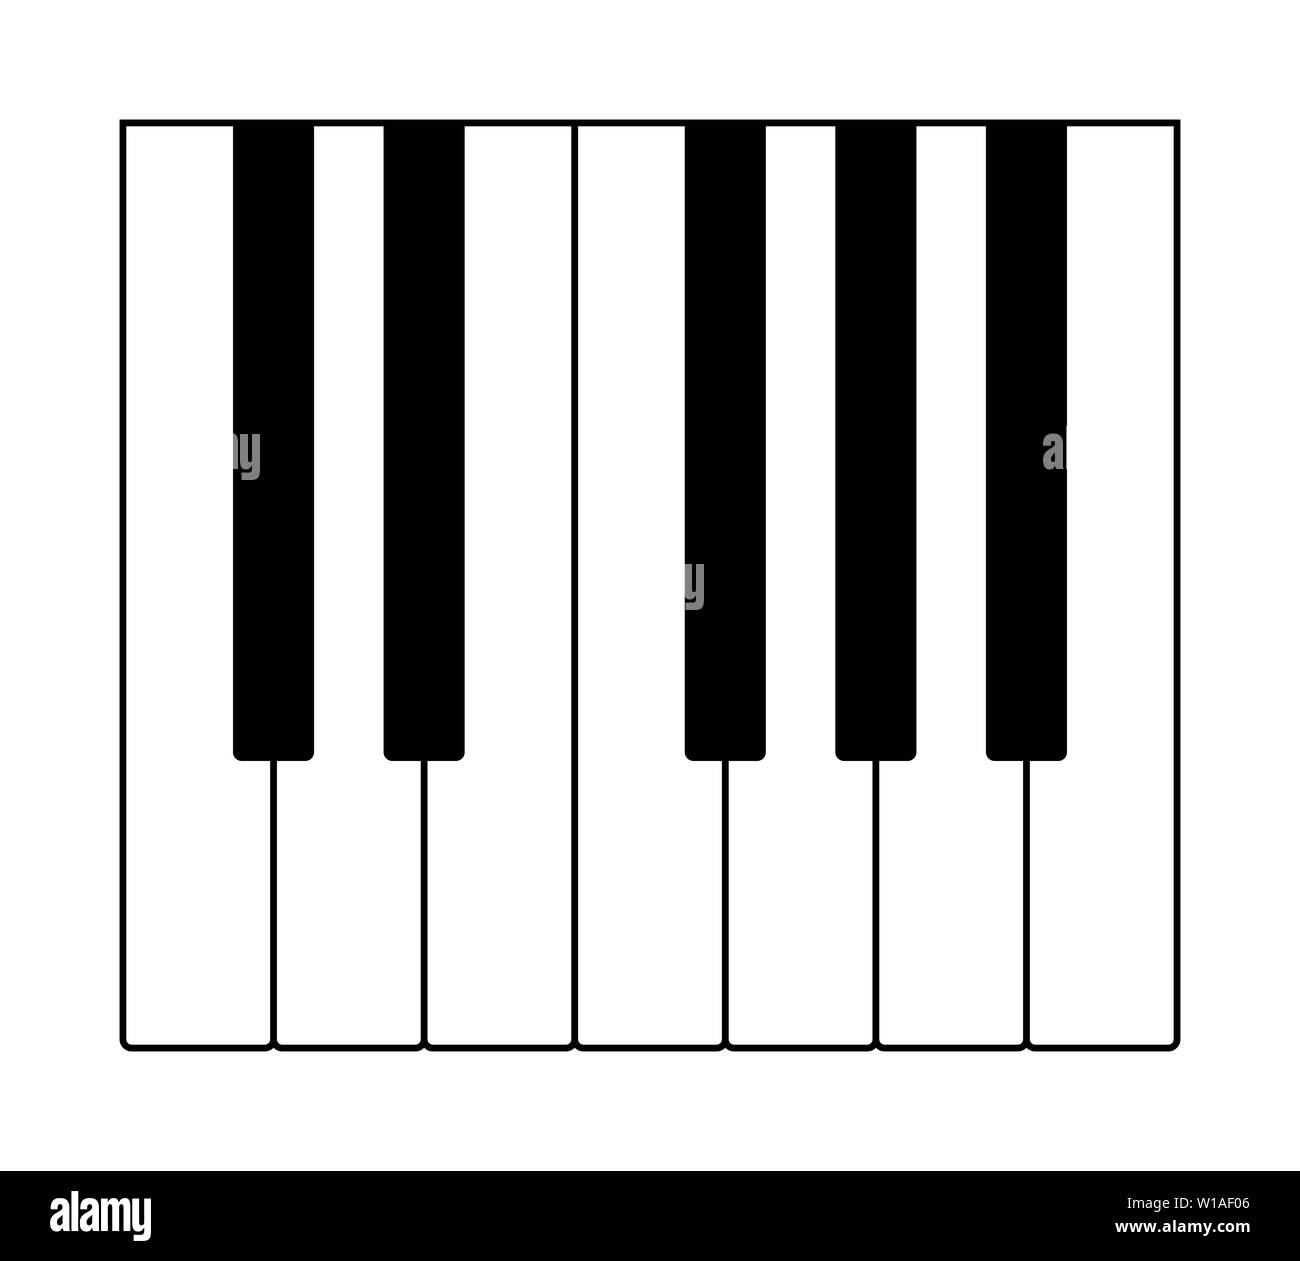 Eine Oktave auf der Tastatur ein, der den Noten der westlichen Tonleiter  spielen. Zwölf Tasten eines Instruments Stockfotografie - Alamy